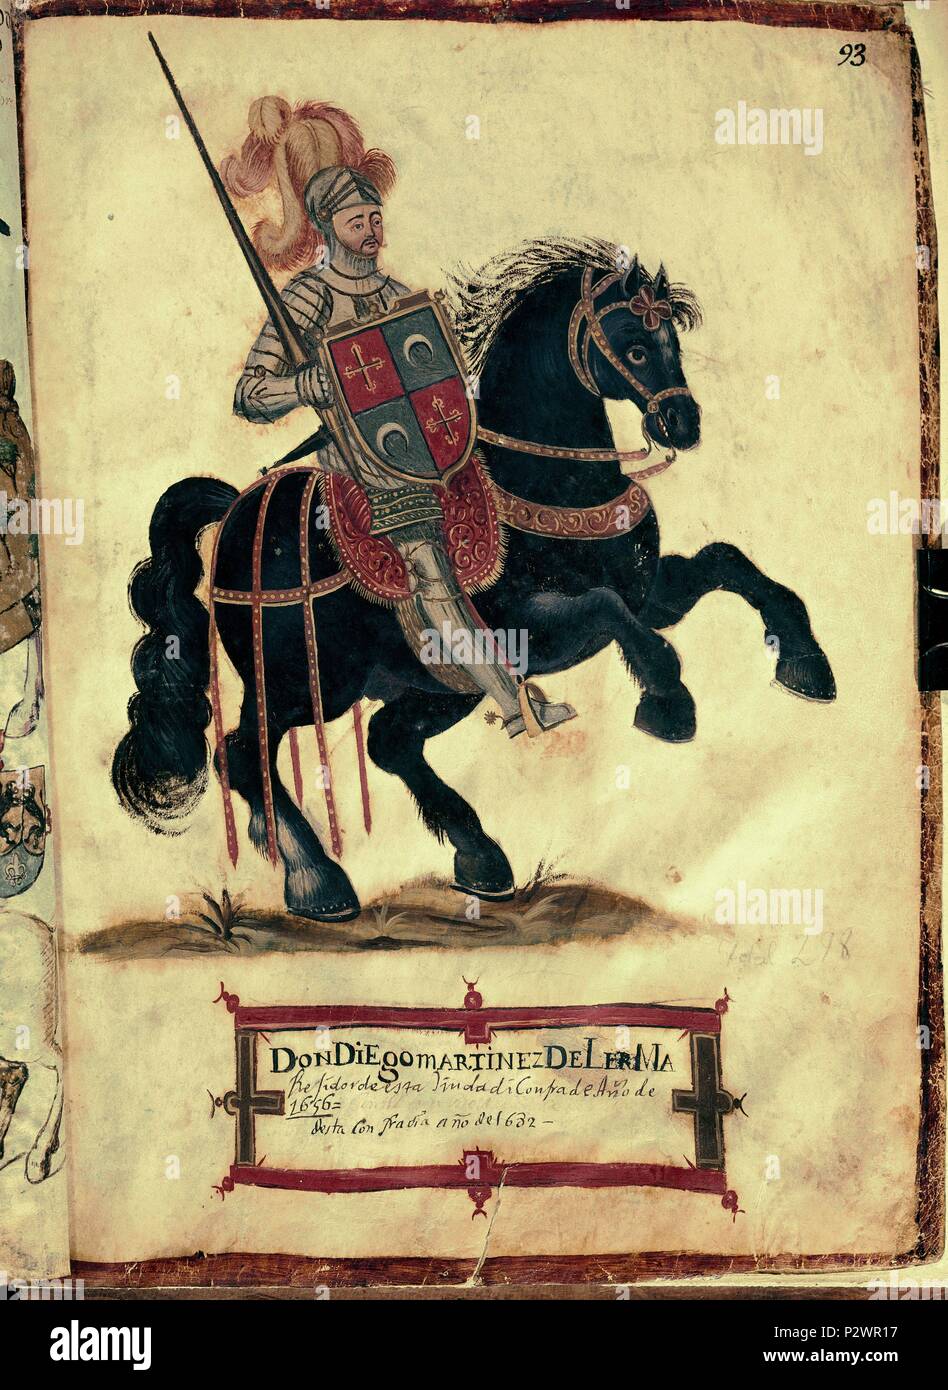 Buch des Orden von Santiago Ritterschaft. 1361. Folio 93. Martinez de Lama. Burgos, lokalen Archiven. Lage: ARCHIVO MUNICIPAL, Burgos, Spanien. Stockfoto